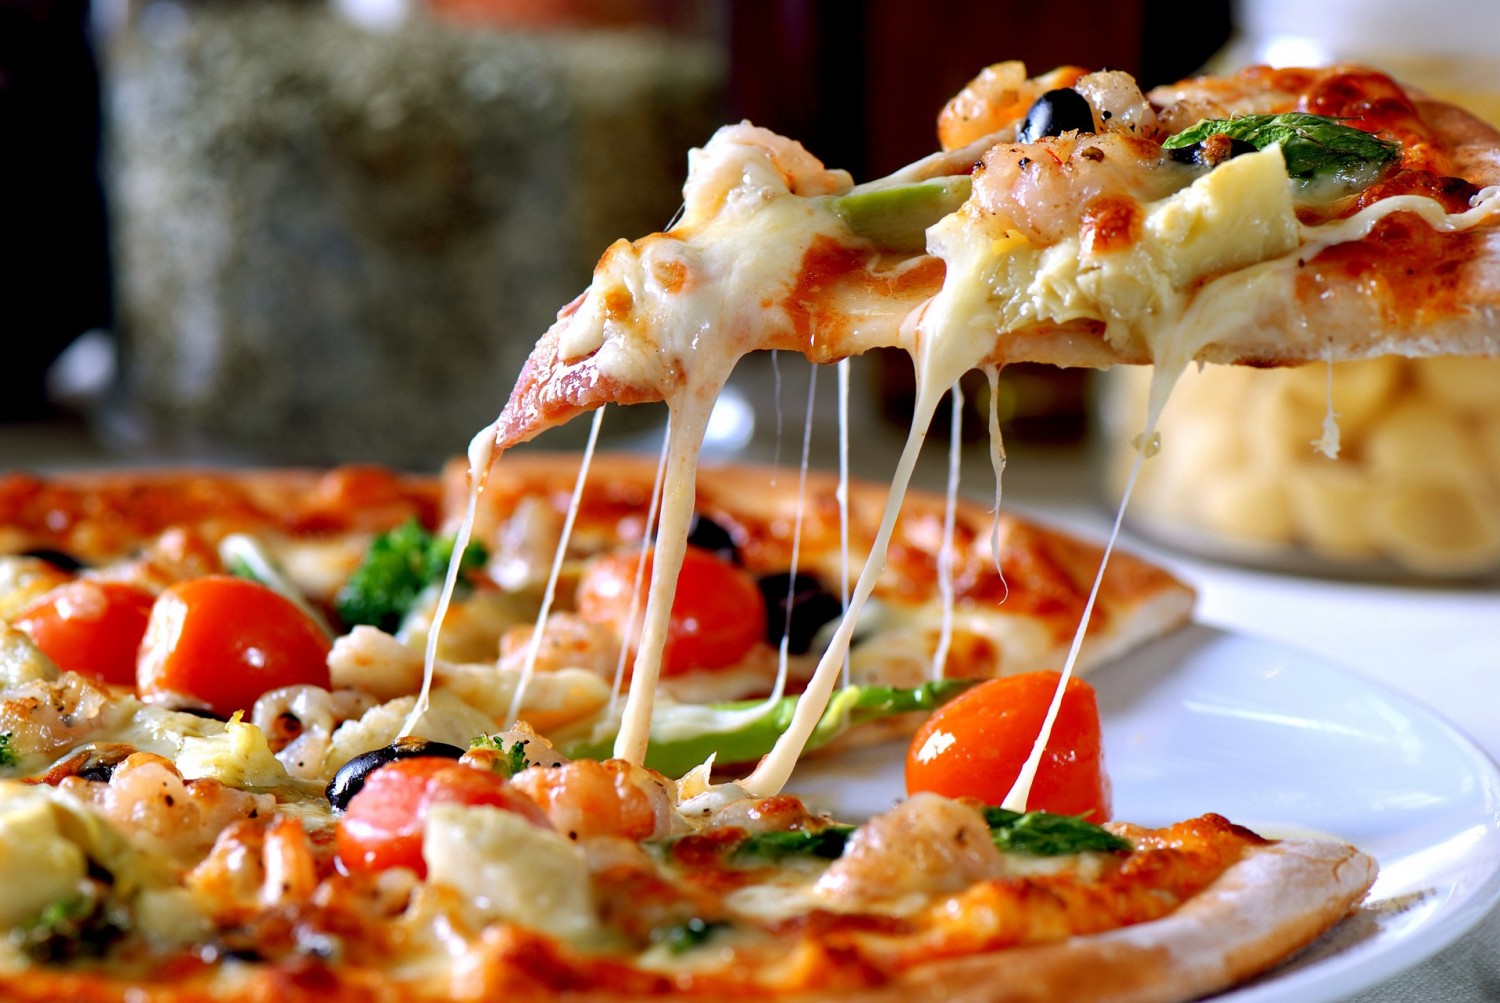 Meglepő, de a világ legjobb pizzériái közül csak kevés van Olaszországban